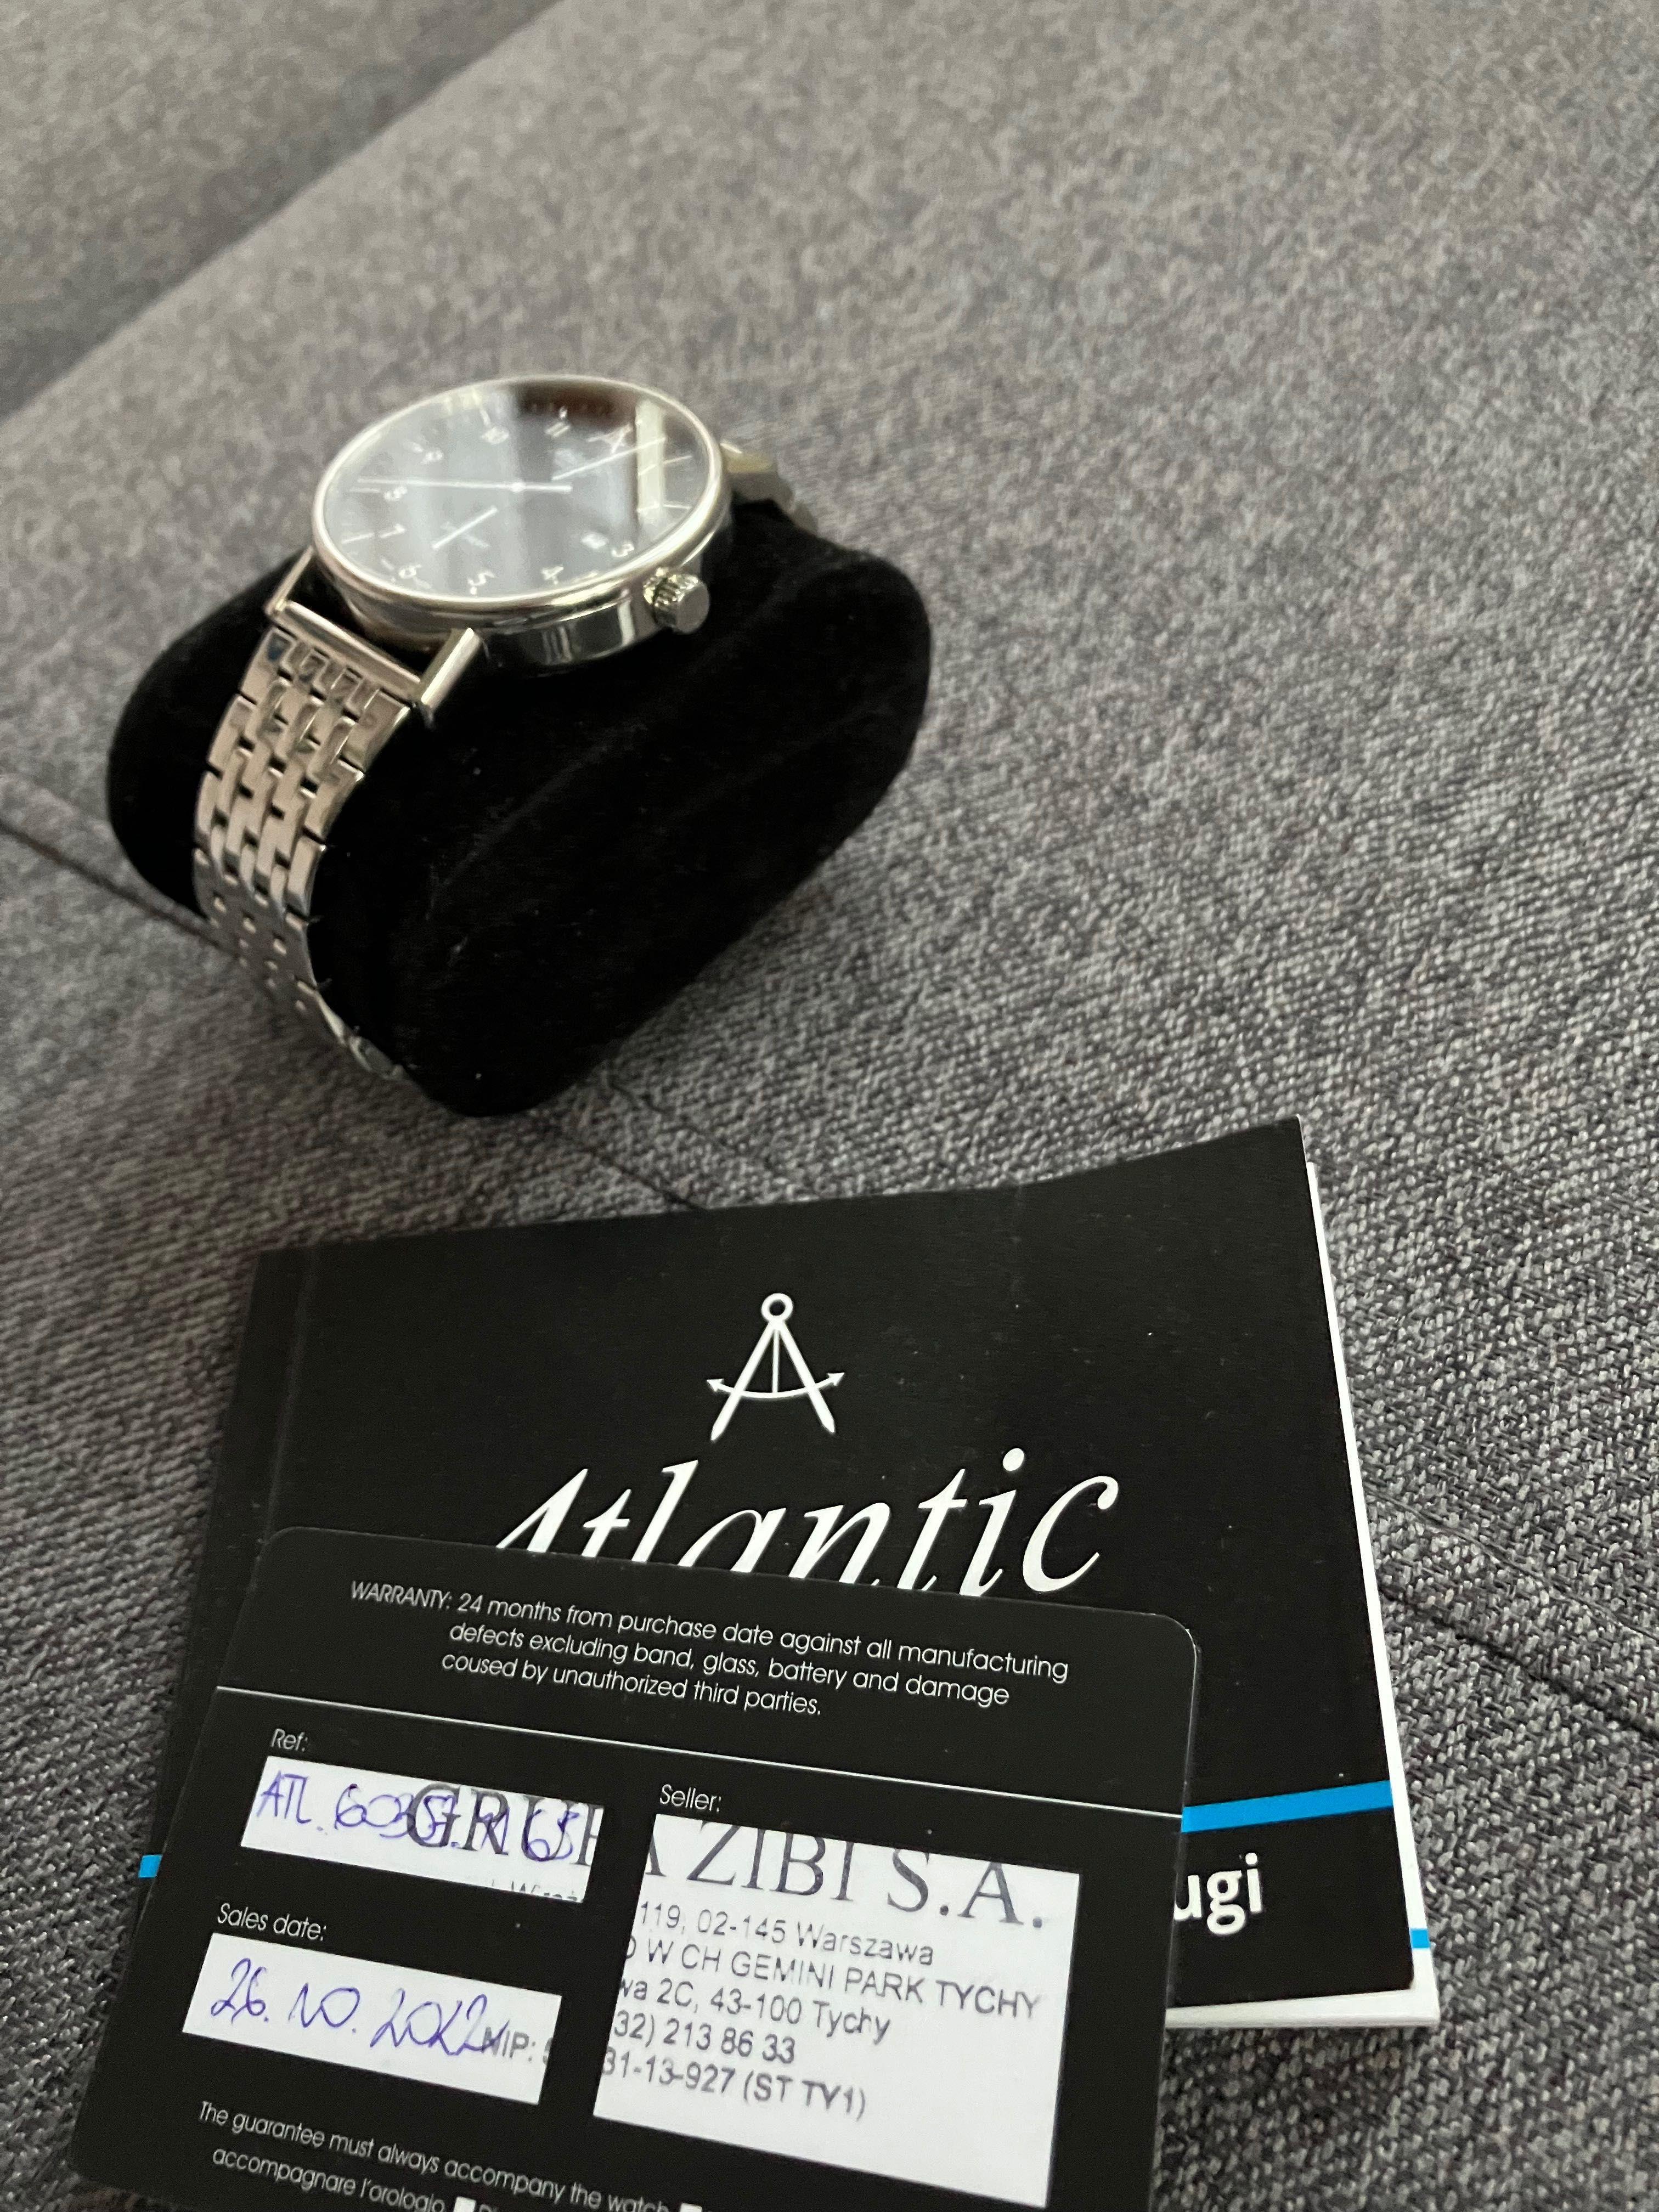 Zegarek Atlantic Seabase 60357, założony trzy razy! Stan jak ze sklepu